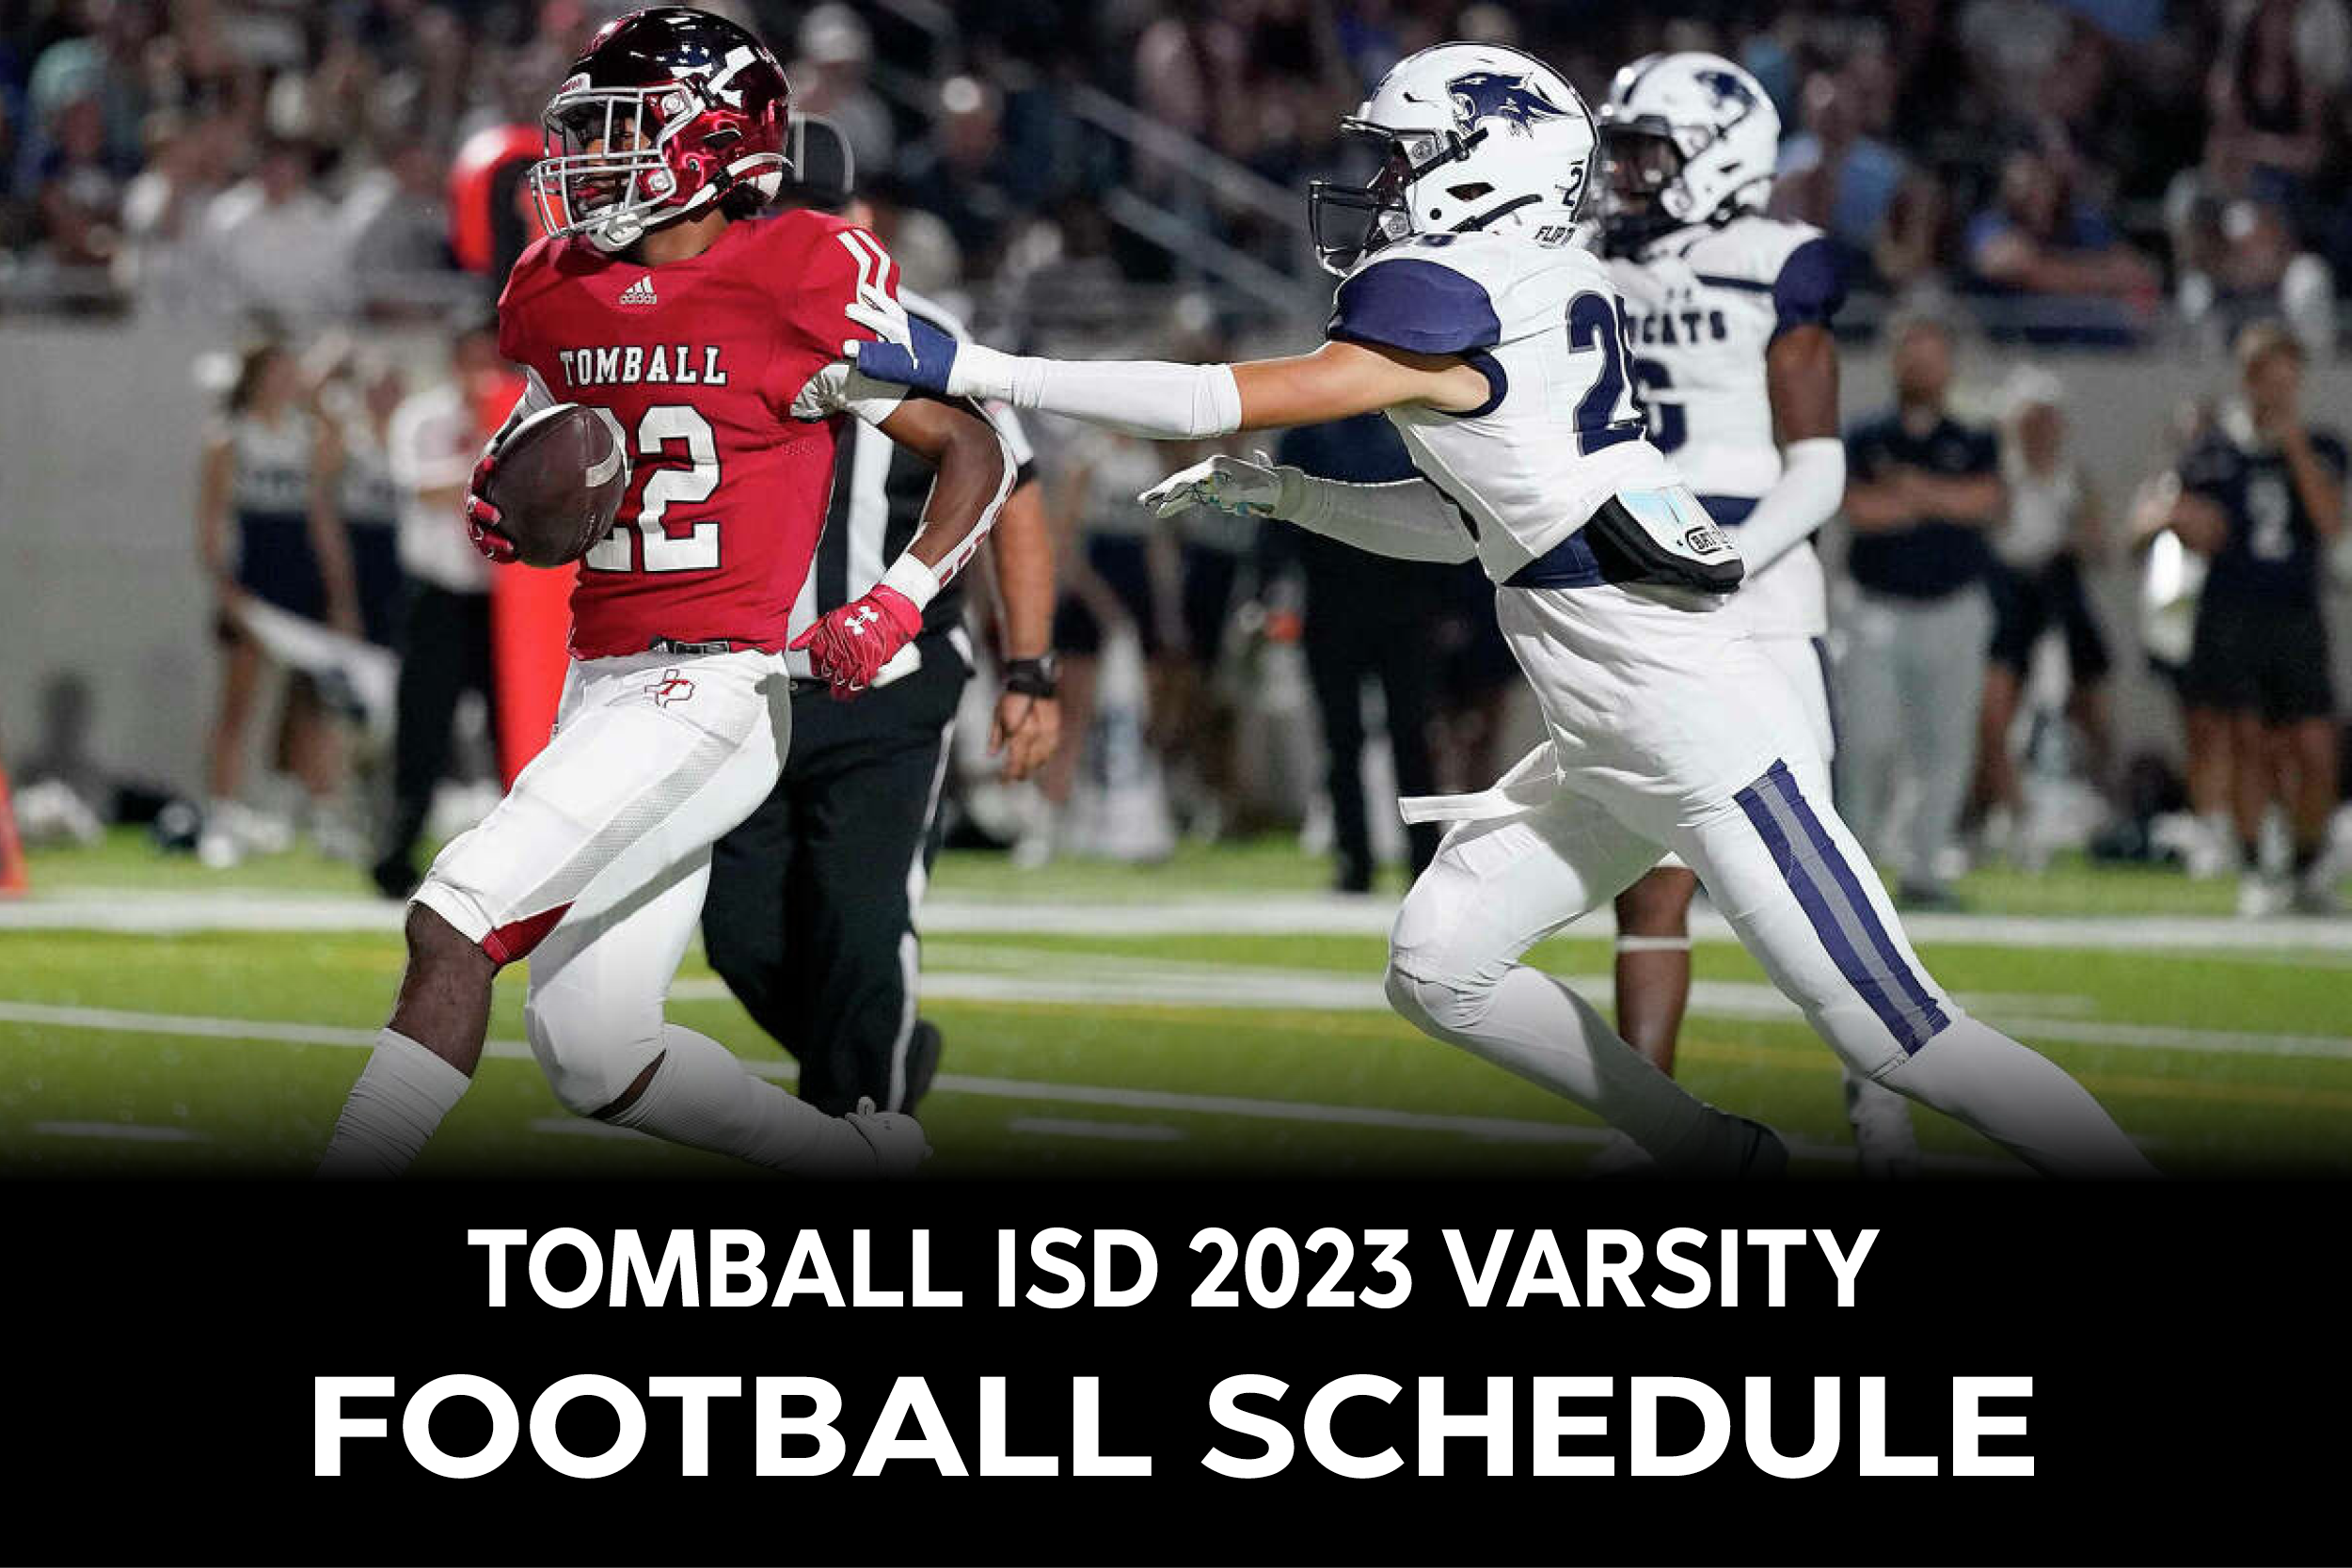 Tomball ISD 2023 Varsity Football Schedule